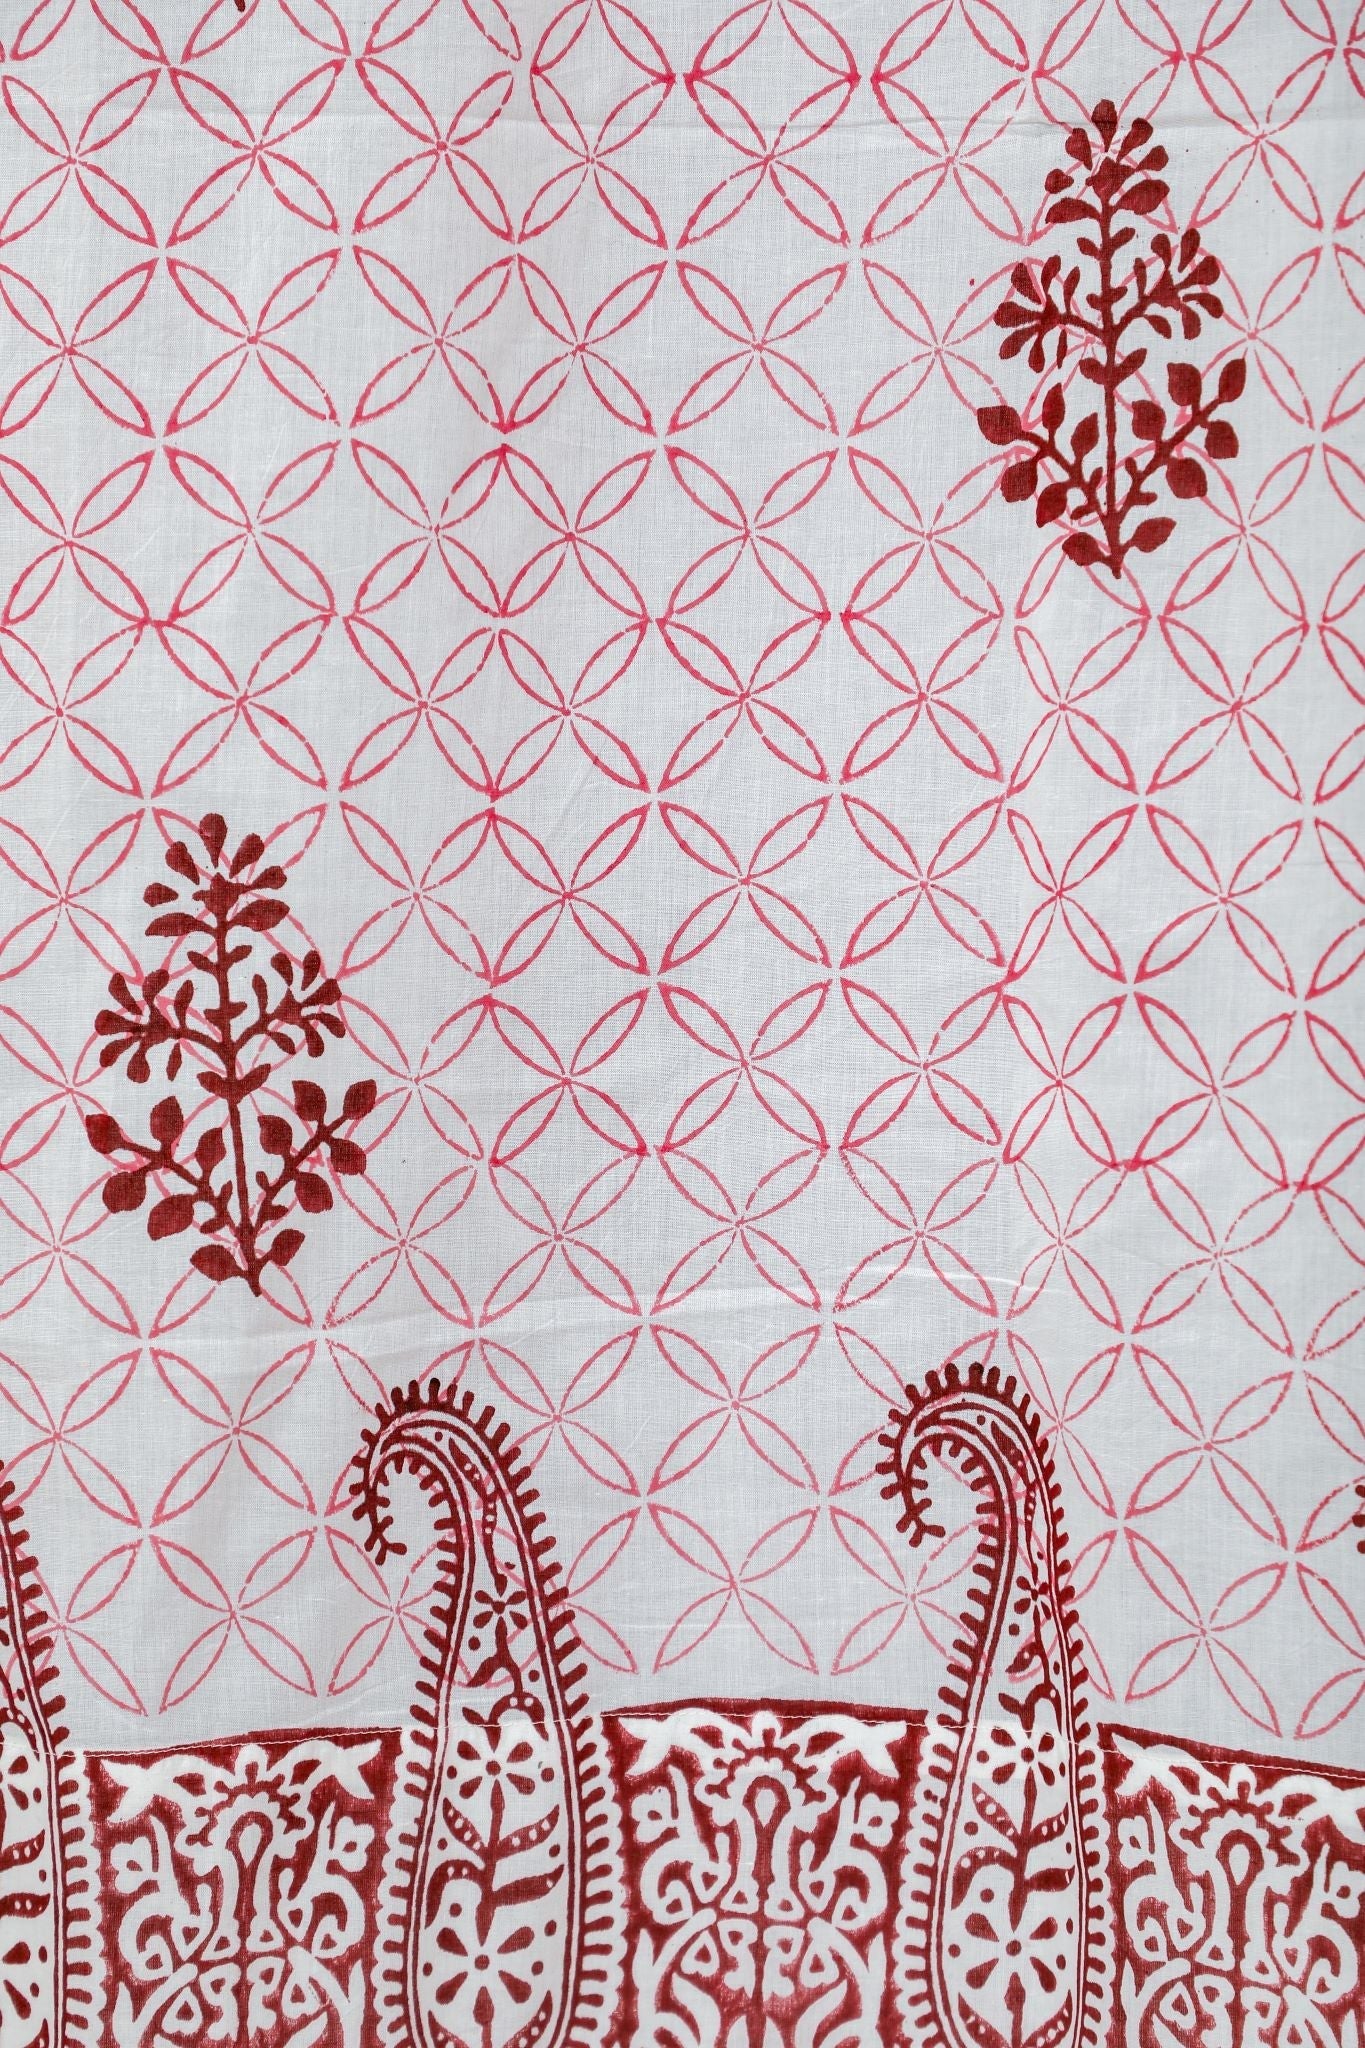 SootiSyahi 'Bunz’s Red Bangles' Handblock Printed Cotton Door Curtain - SootiSyahi